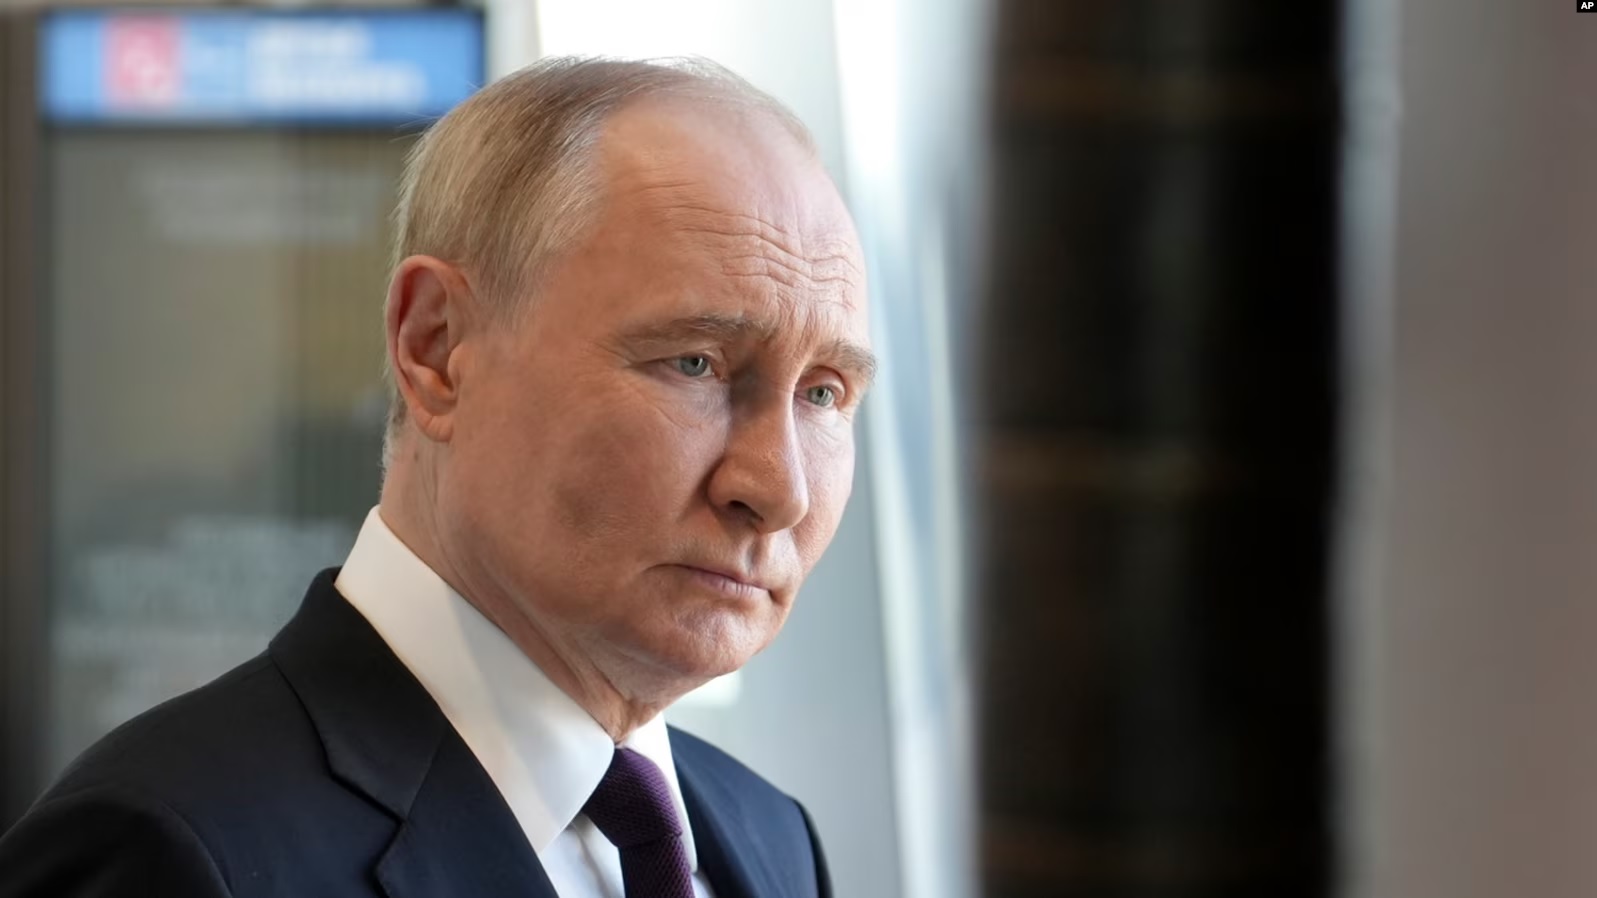 Presidenti rus, Vladimir Putin.